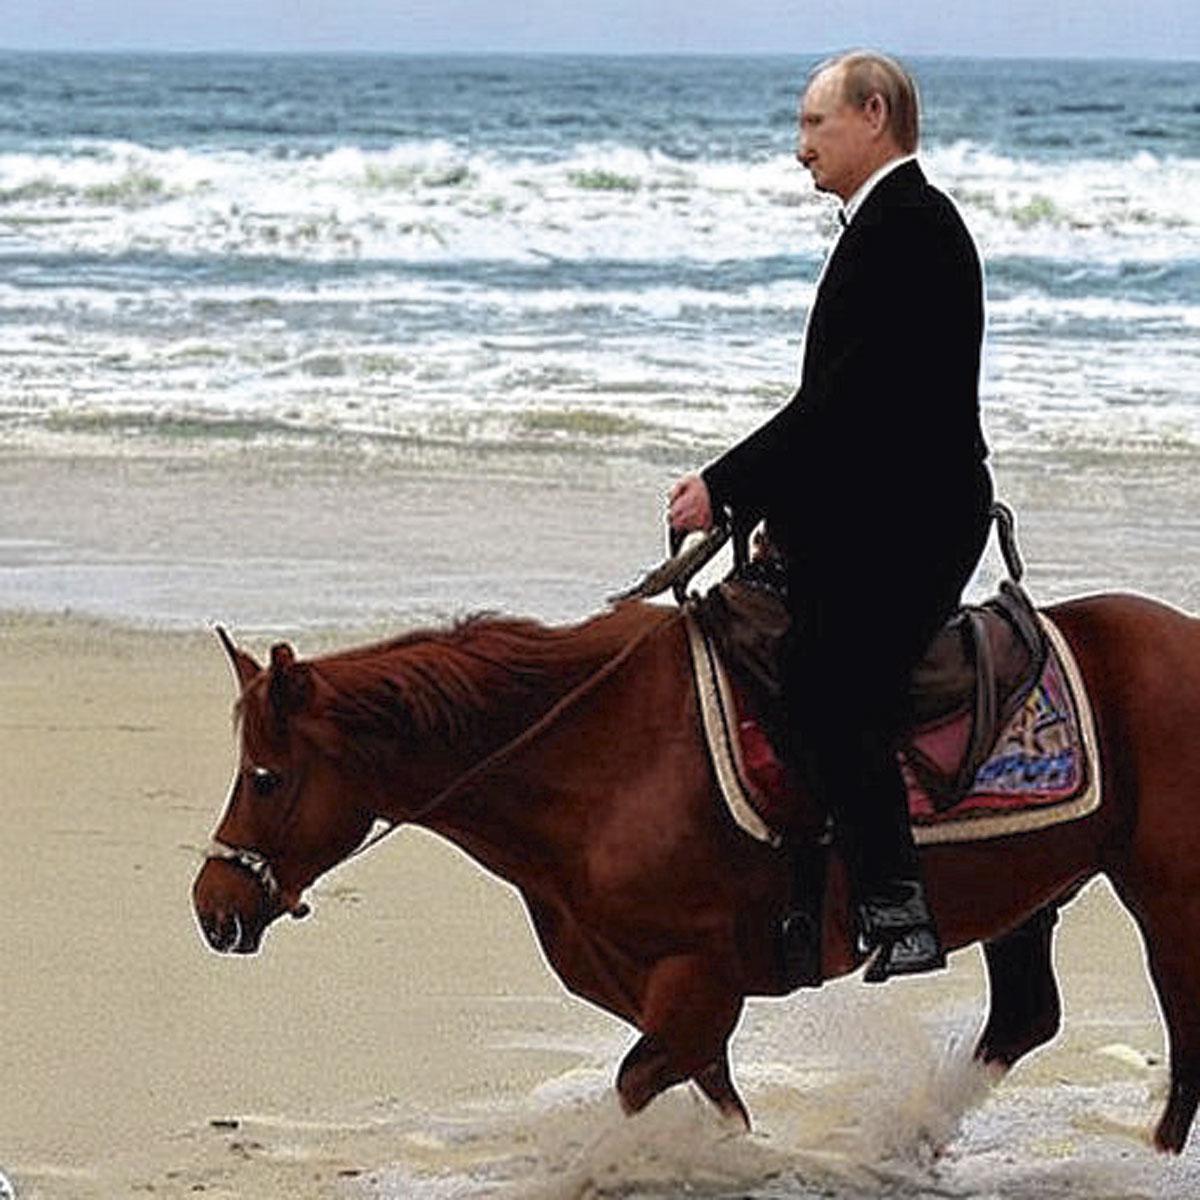 Stable Diffusion permet de générer une image réaliste de Poutine à cheval sur une plage.